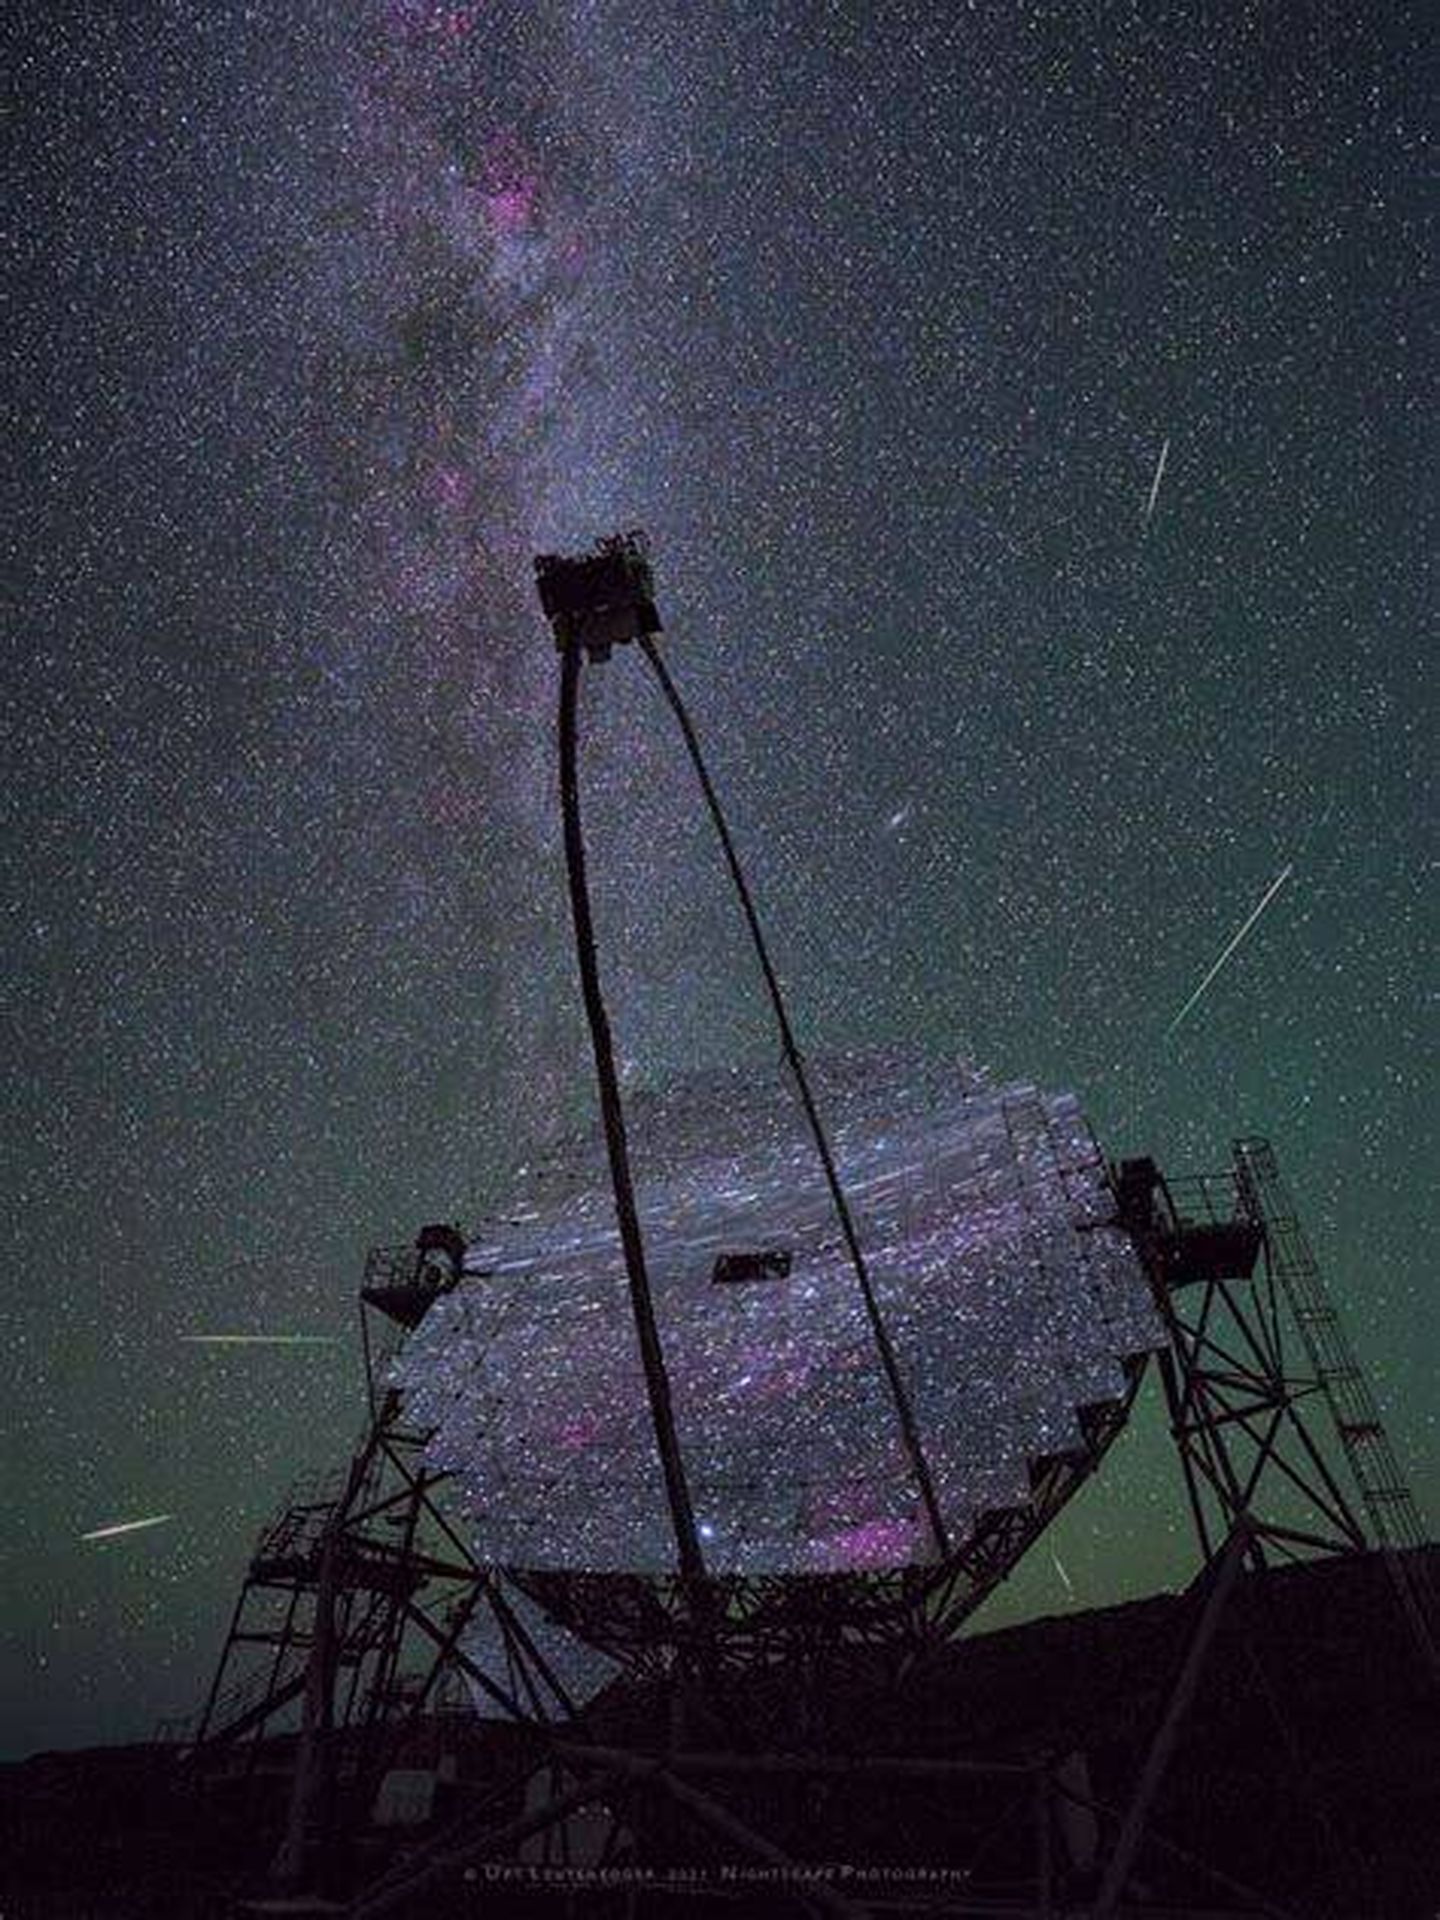 Telescopio MAGIC desde el Observatorio Europeo norte del Roque de los Muchachos en la isla canaria de La Palma. (NASA/Urs Leutenegger)